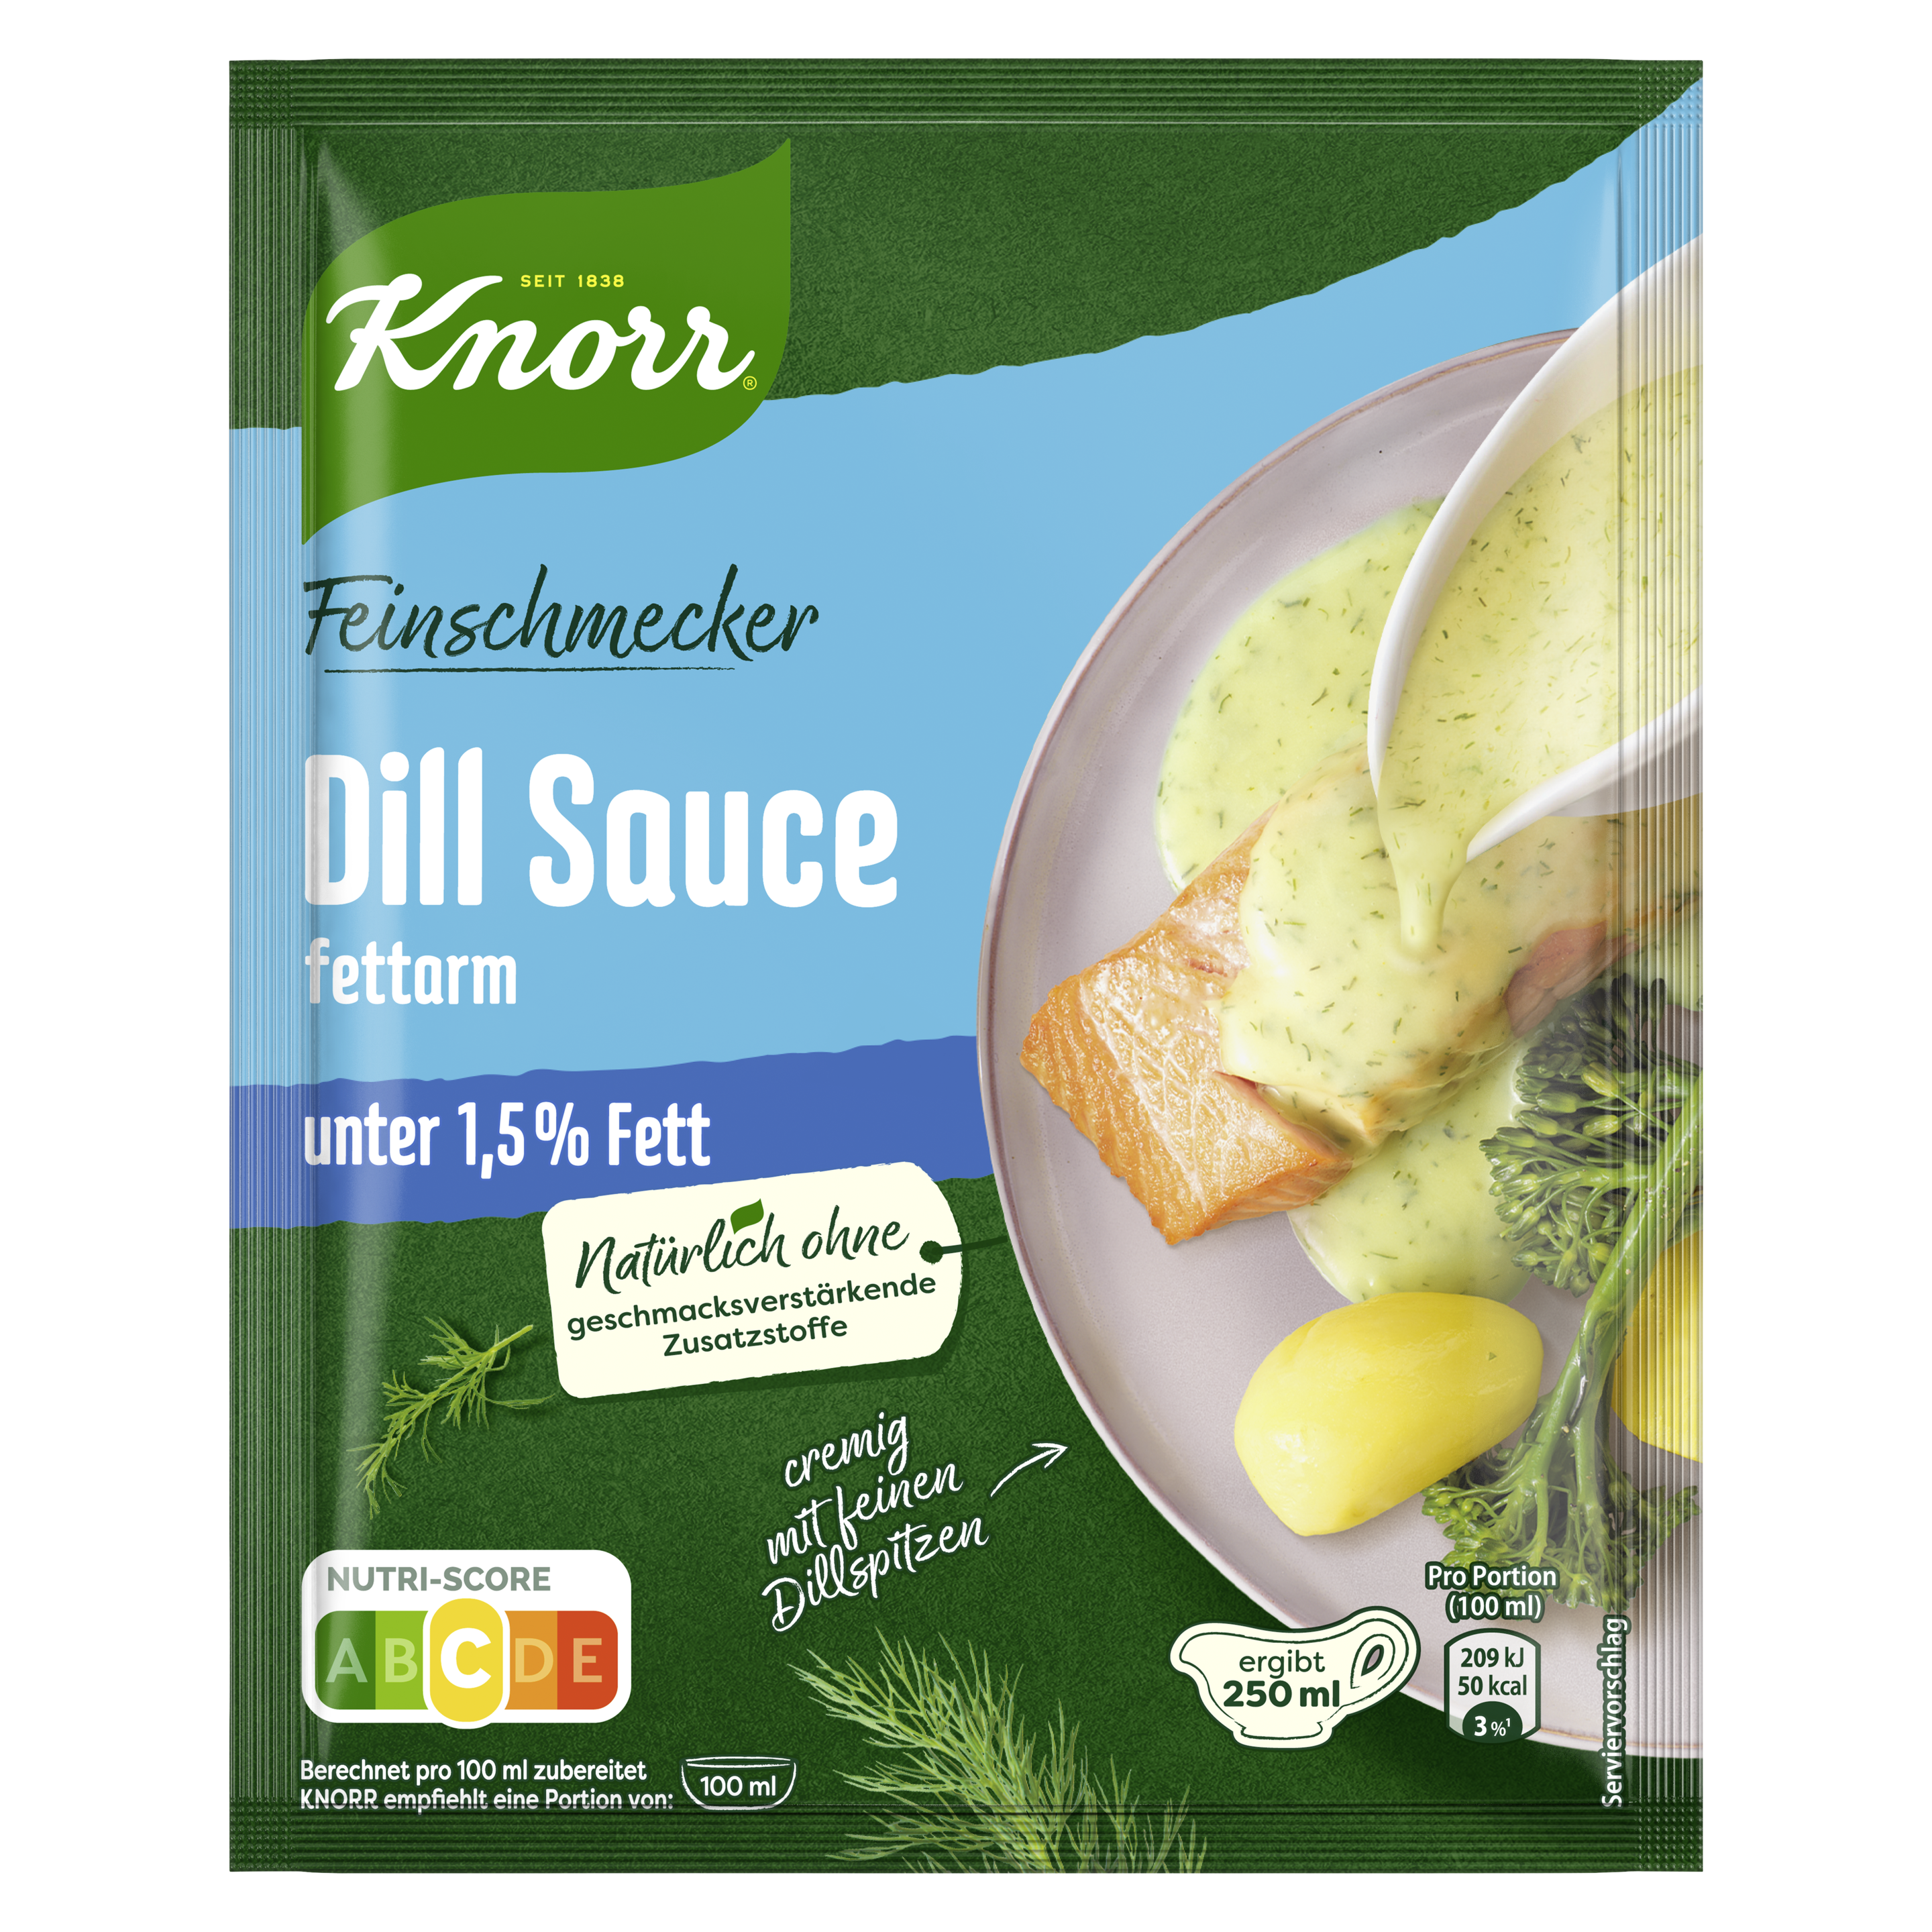 Knorr Feinschmecker Dill Sauce fettarm ergibt 250 ml | Knorr